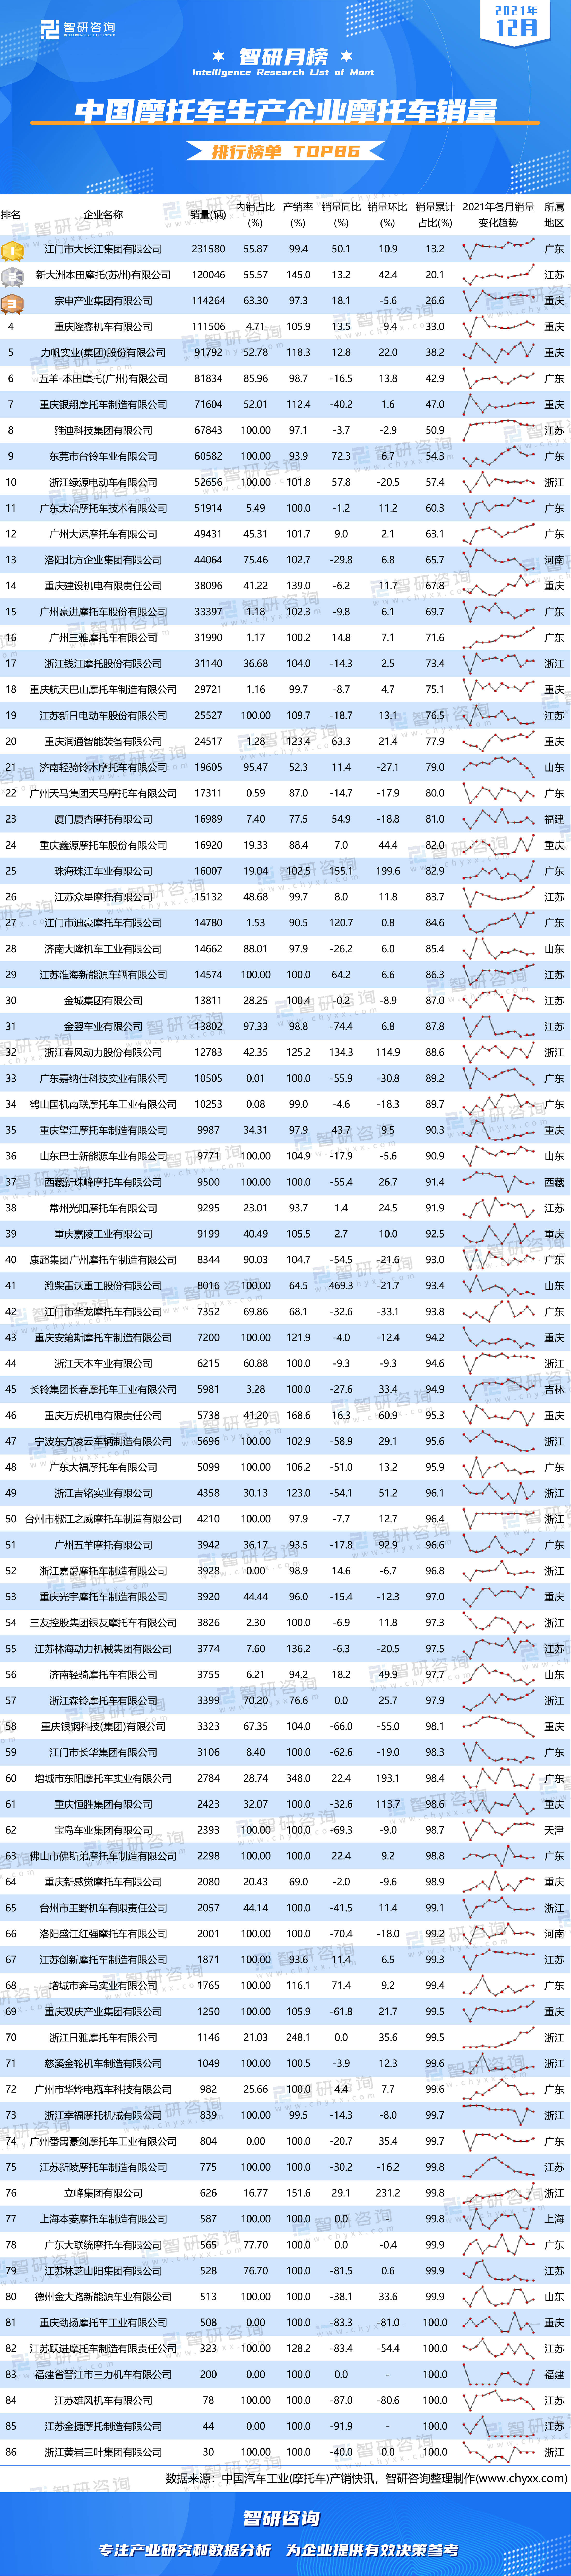 踏板车排行榜2021_2021年12月中国摩托车生产企业摩托车销量排行榜(附月榜TOP86详...